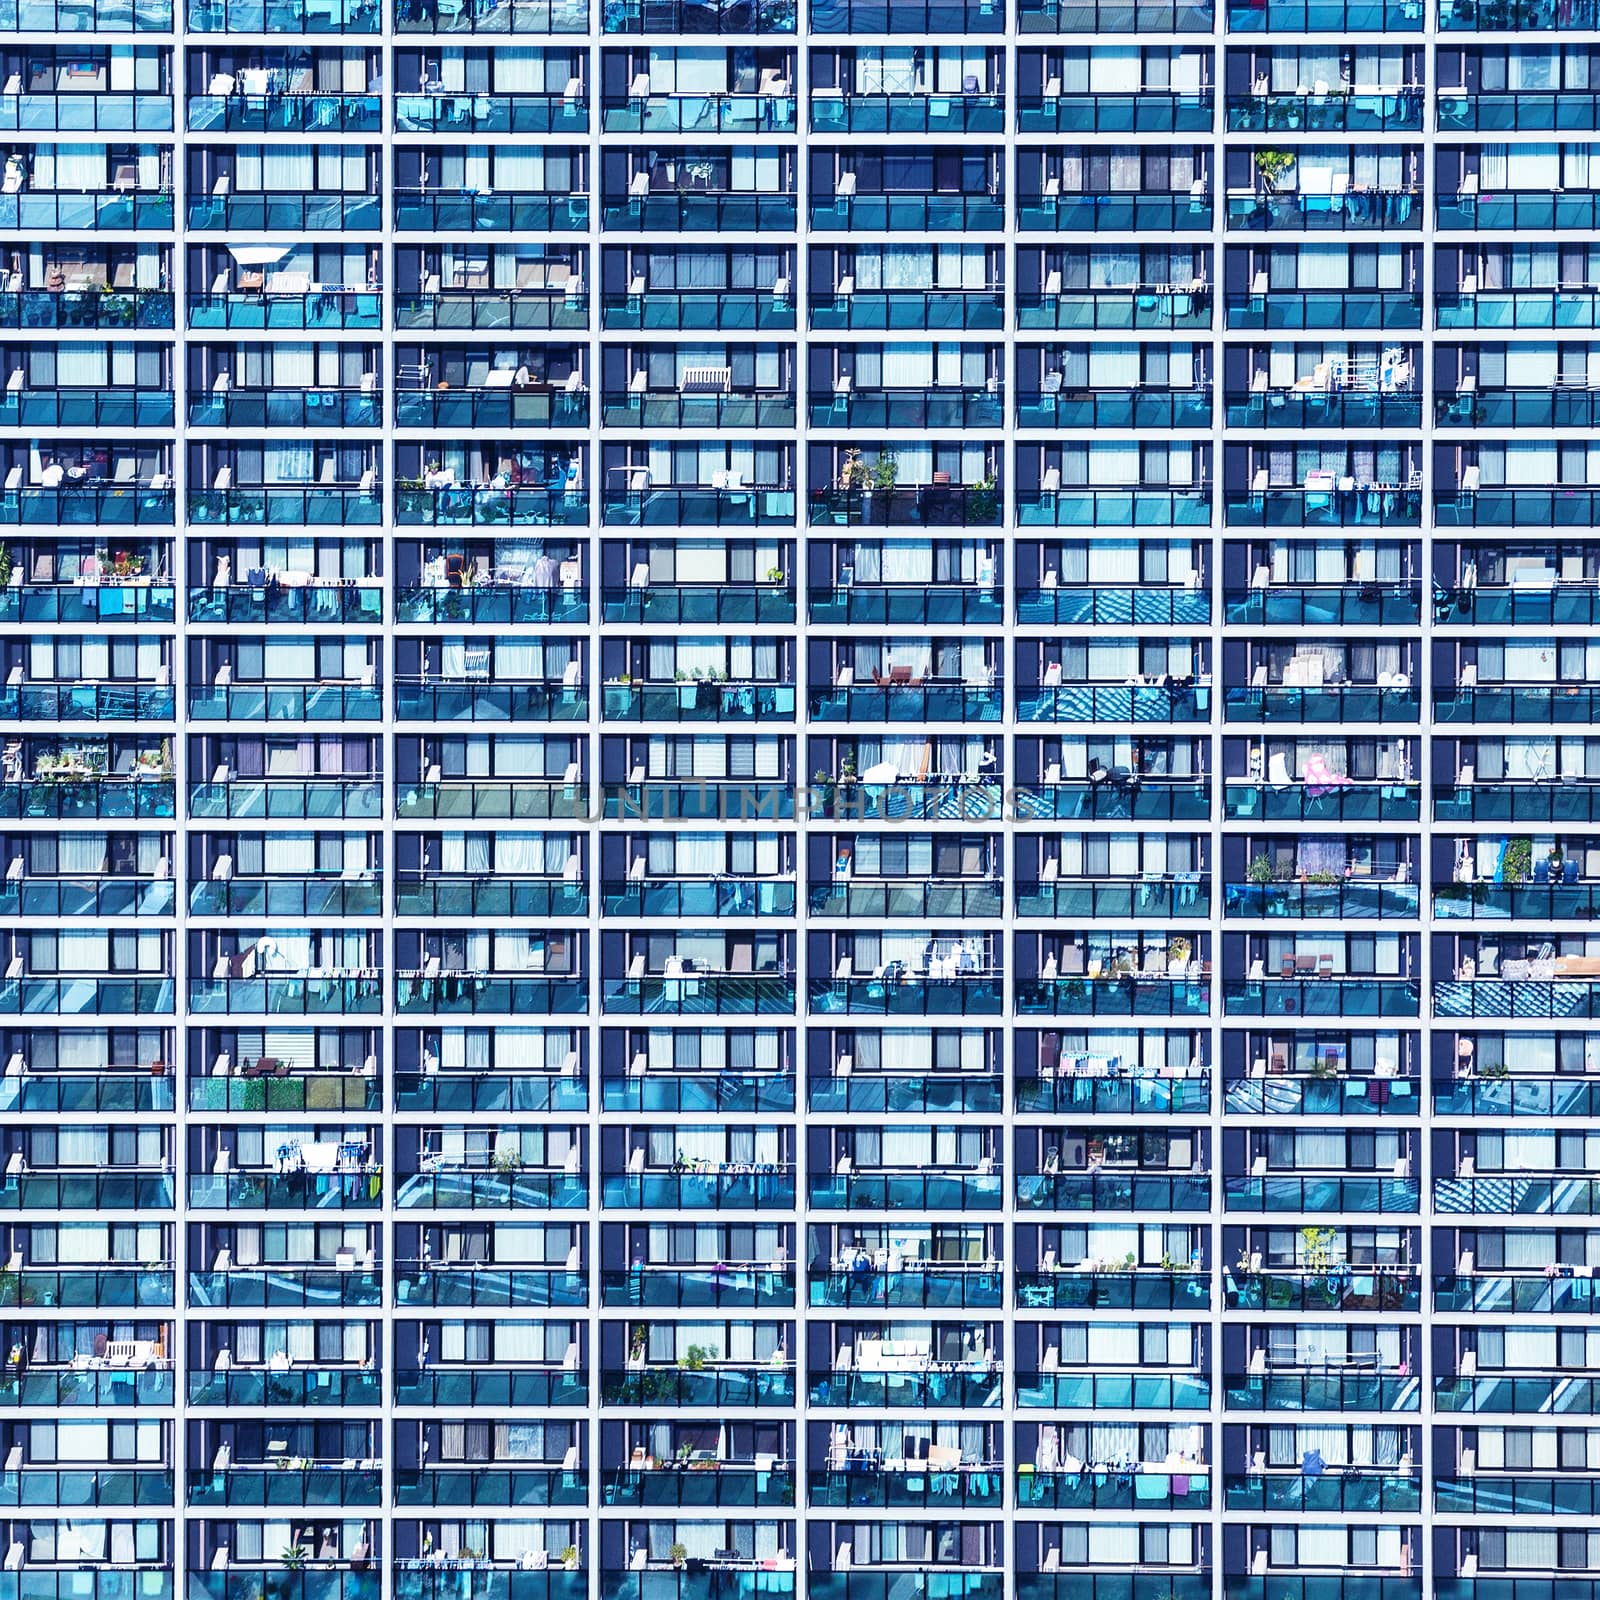 Blue pattern with small balconies and windows, Osaka, Japan by zhu_zhu